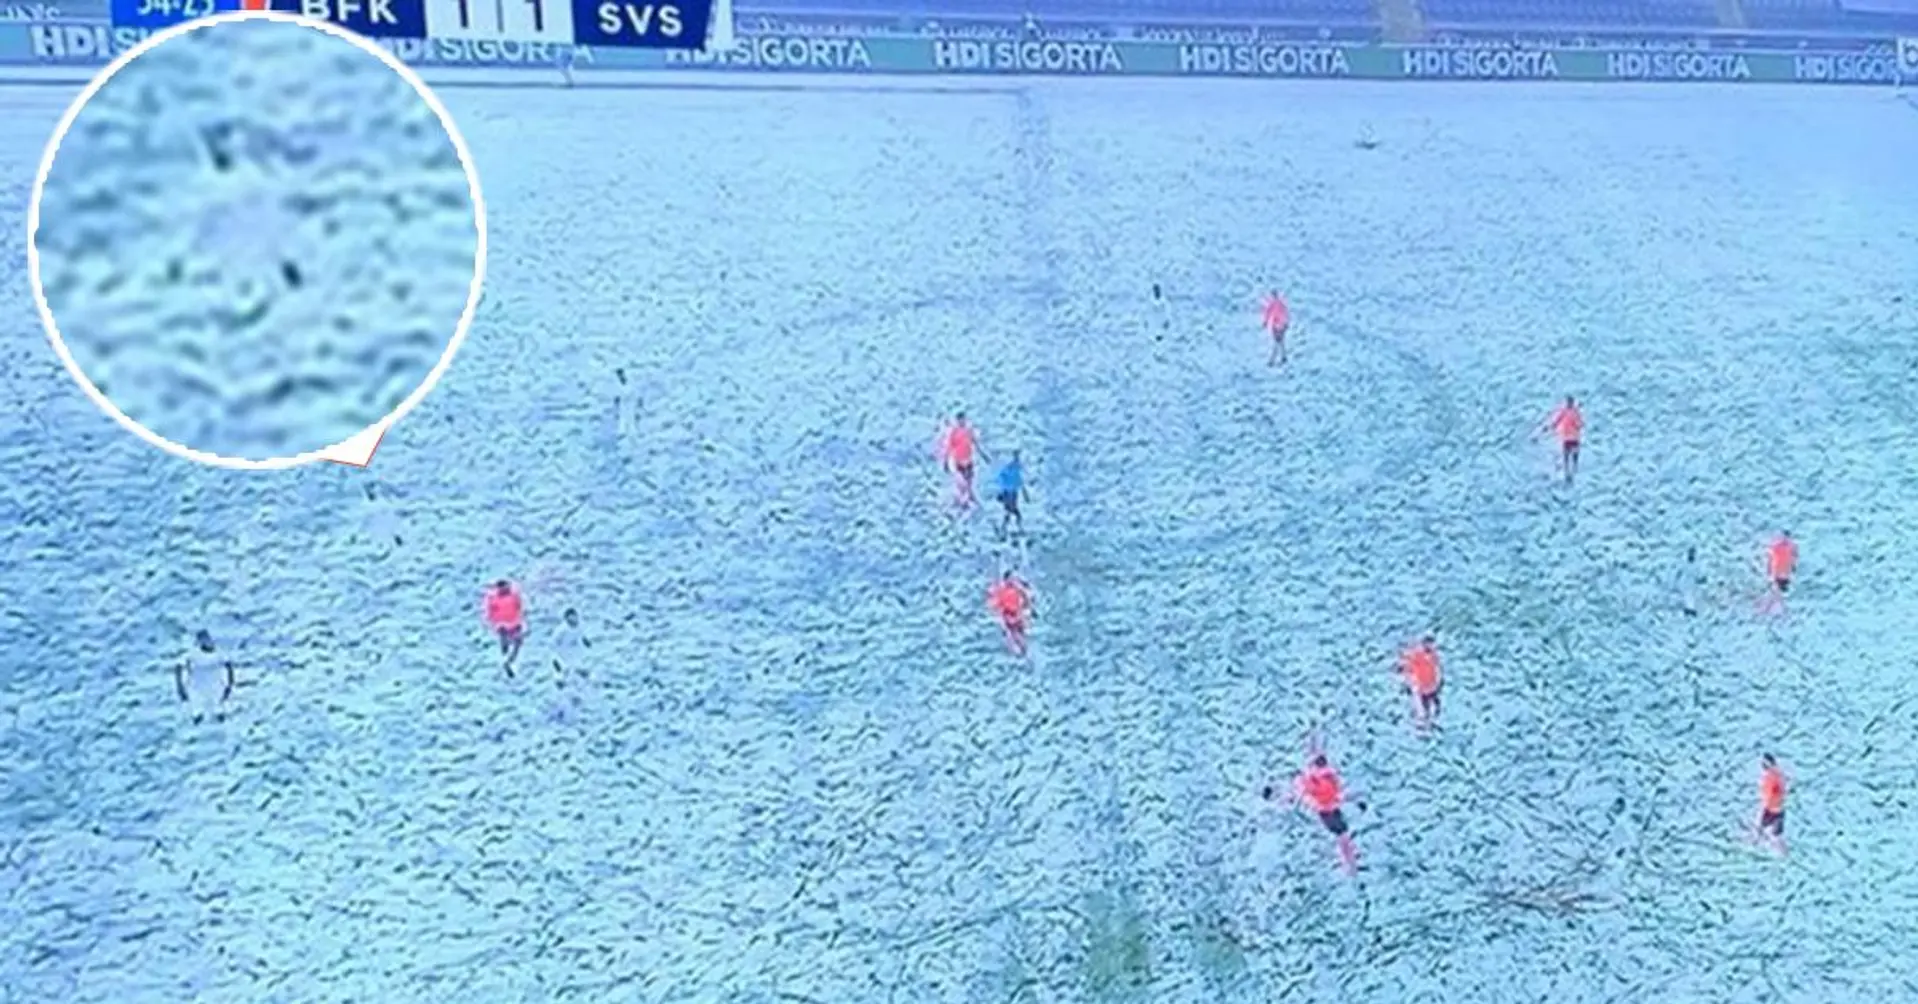 Türkisches Team trägt weiße Trikots bei Schnee, Spieler verschwinden förmlich